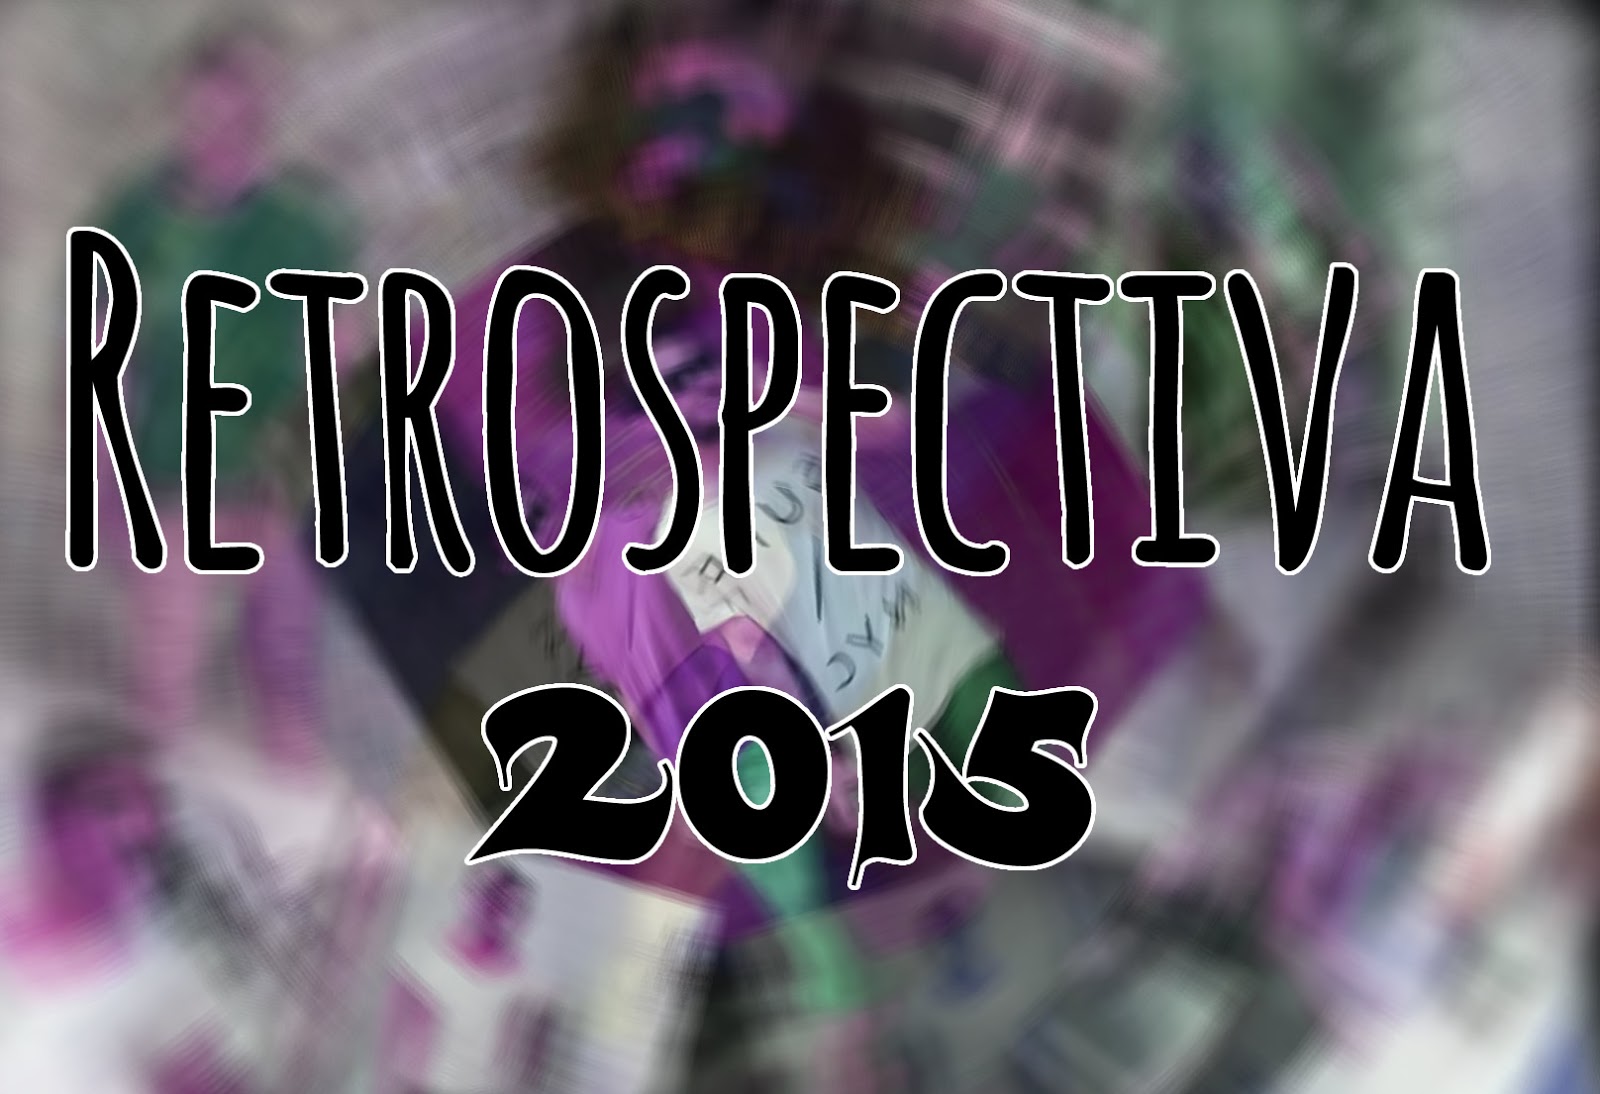 Retrospectiva 2015 do Blog - Os posts mais acessados do Ano